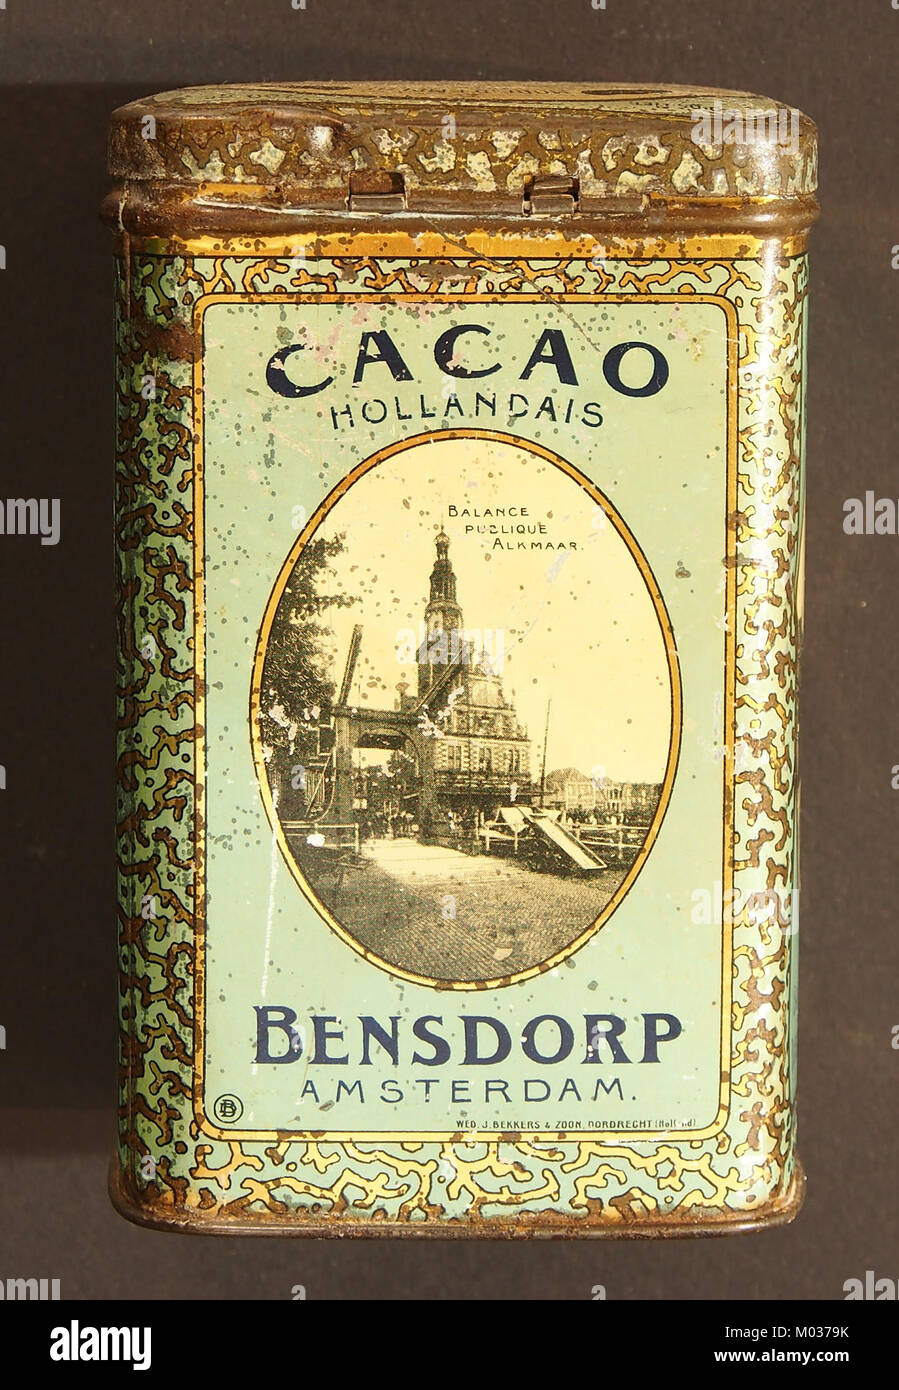 Cacao Hollandais, Bensdorp Amsterdam blik pic1 Stock Photo